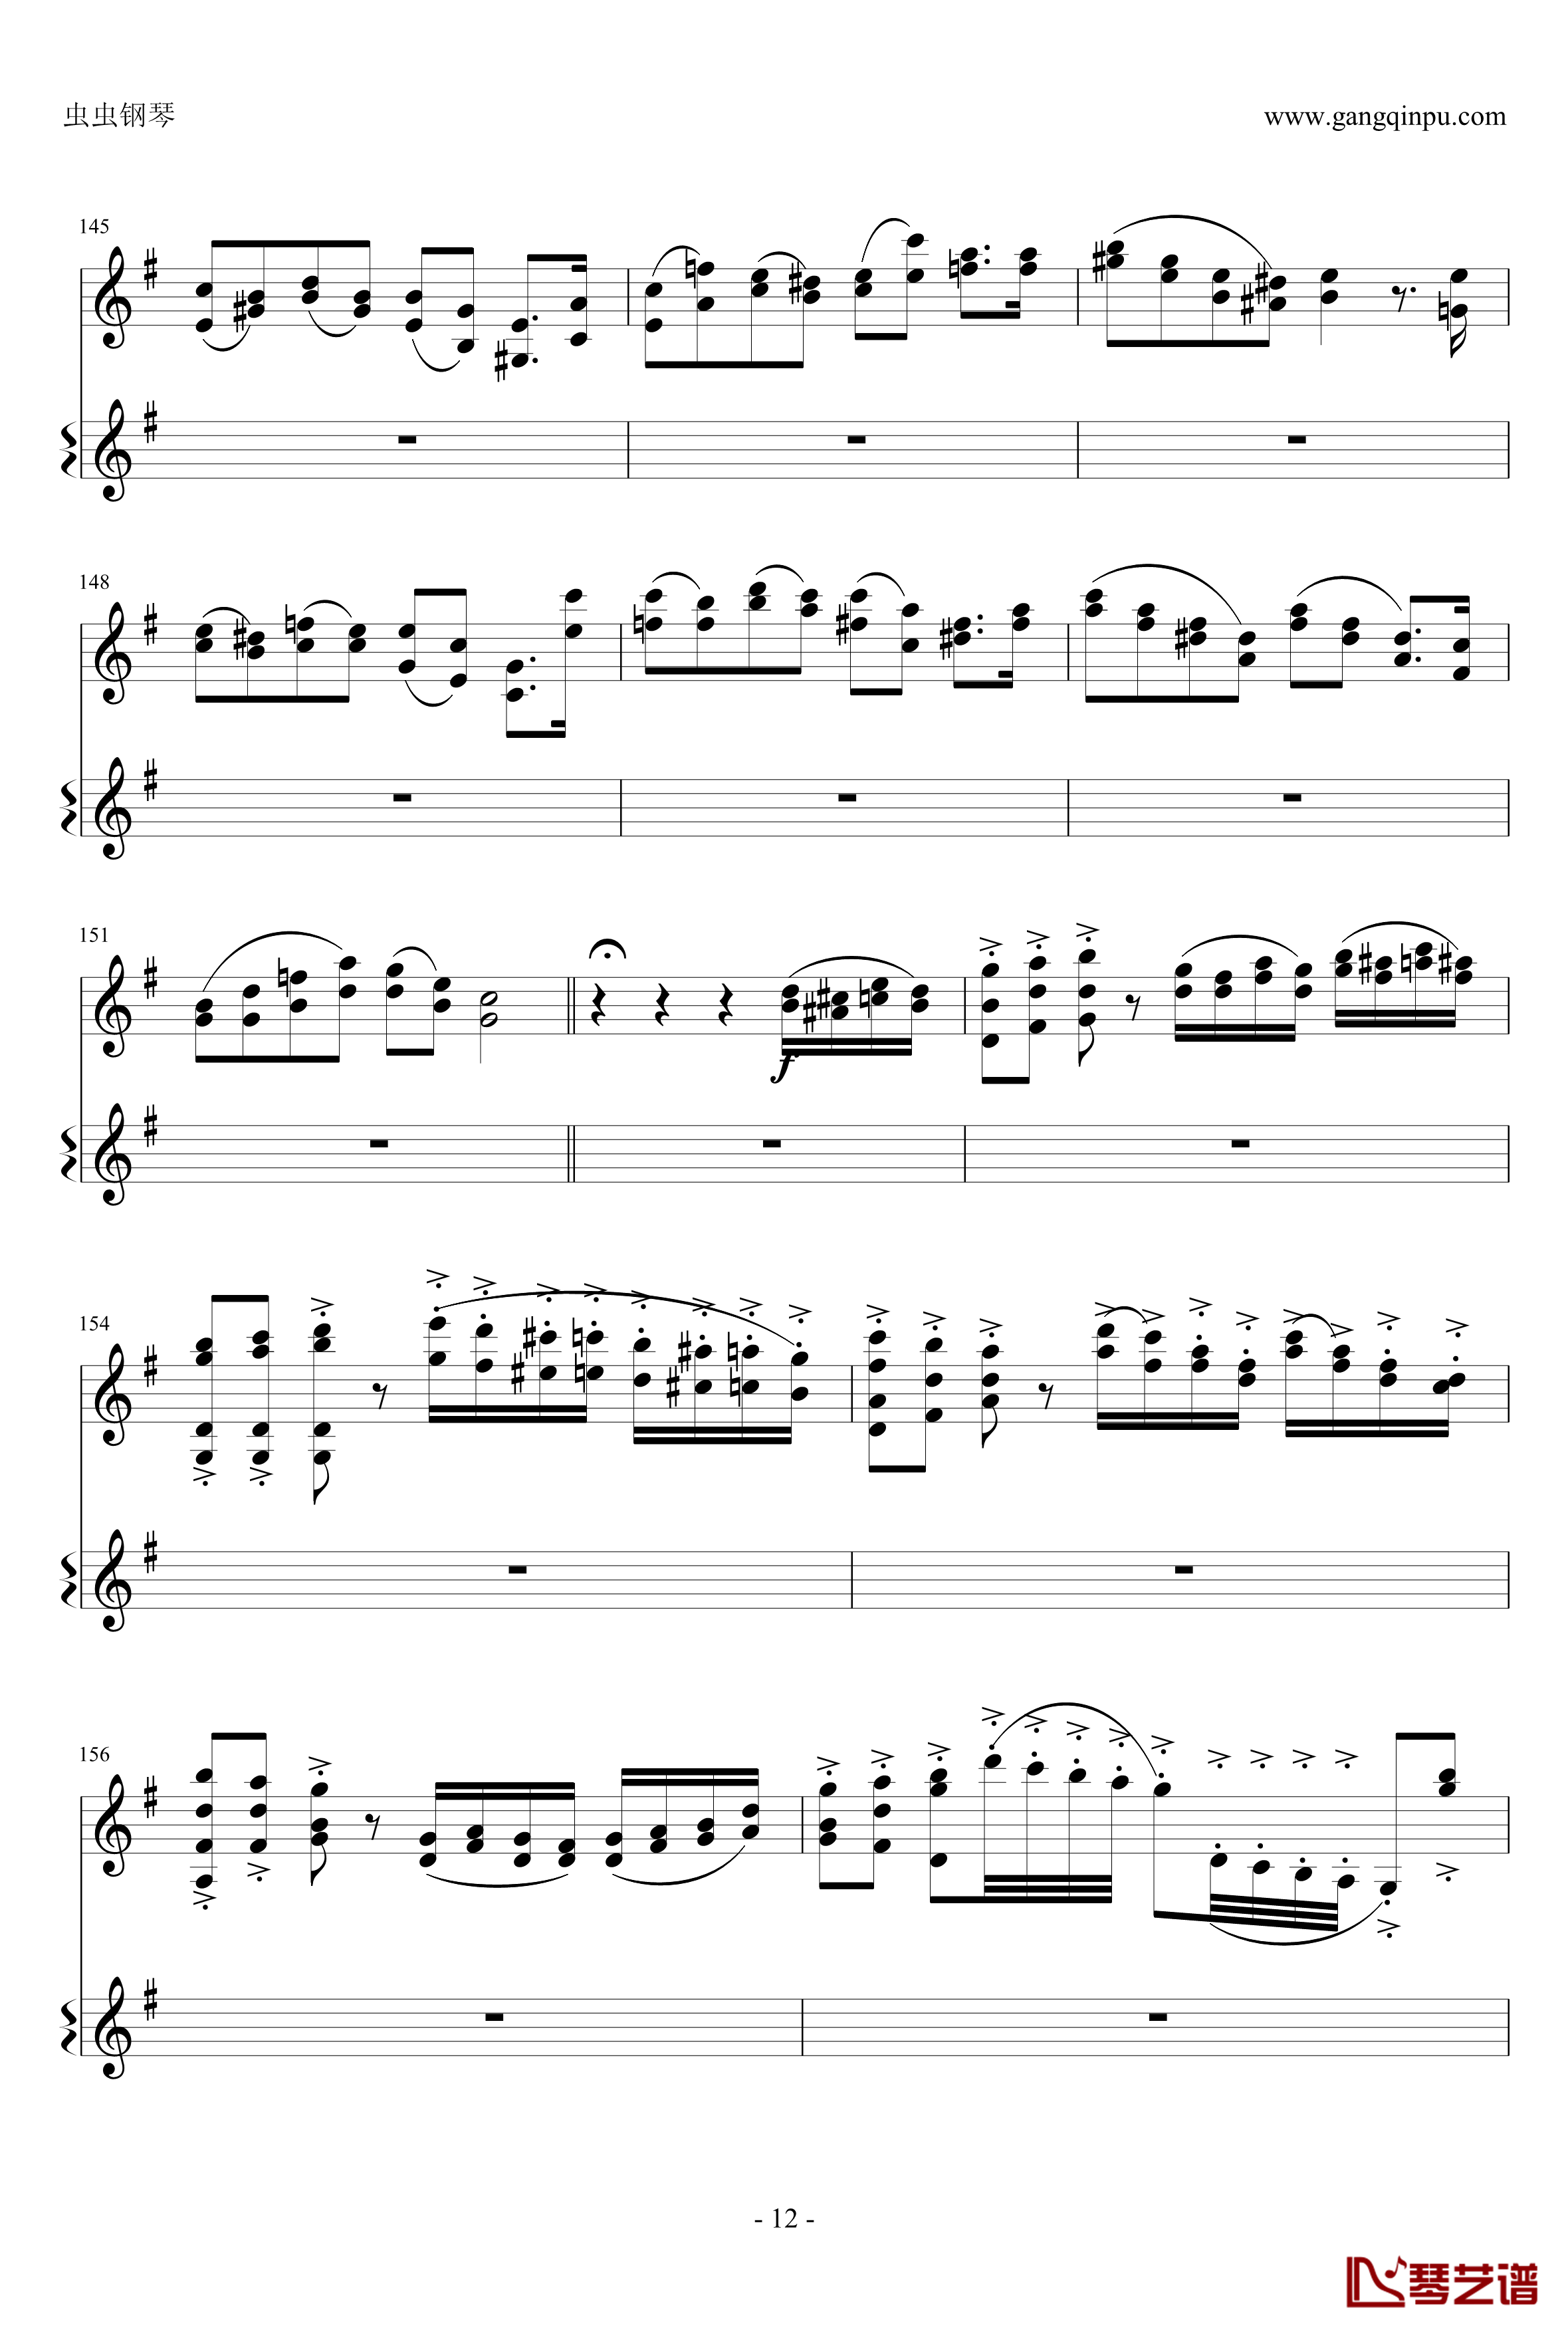 意大利国歌钢琴谱-变奏曲修改版-DXF12